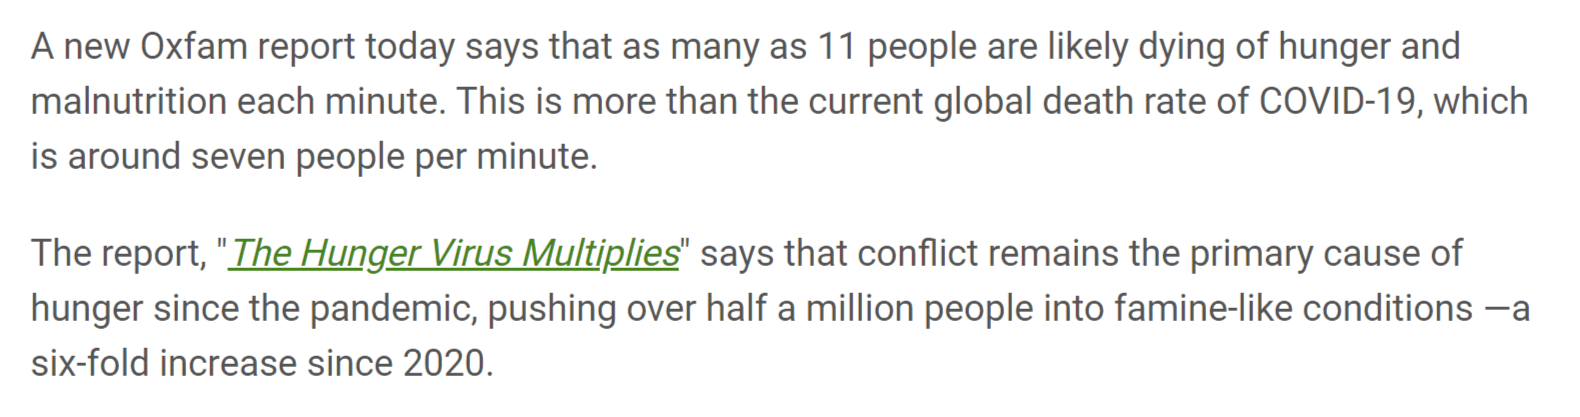 Excerpt of Oxfam article 